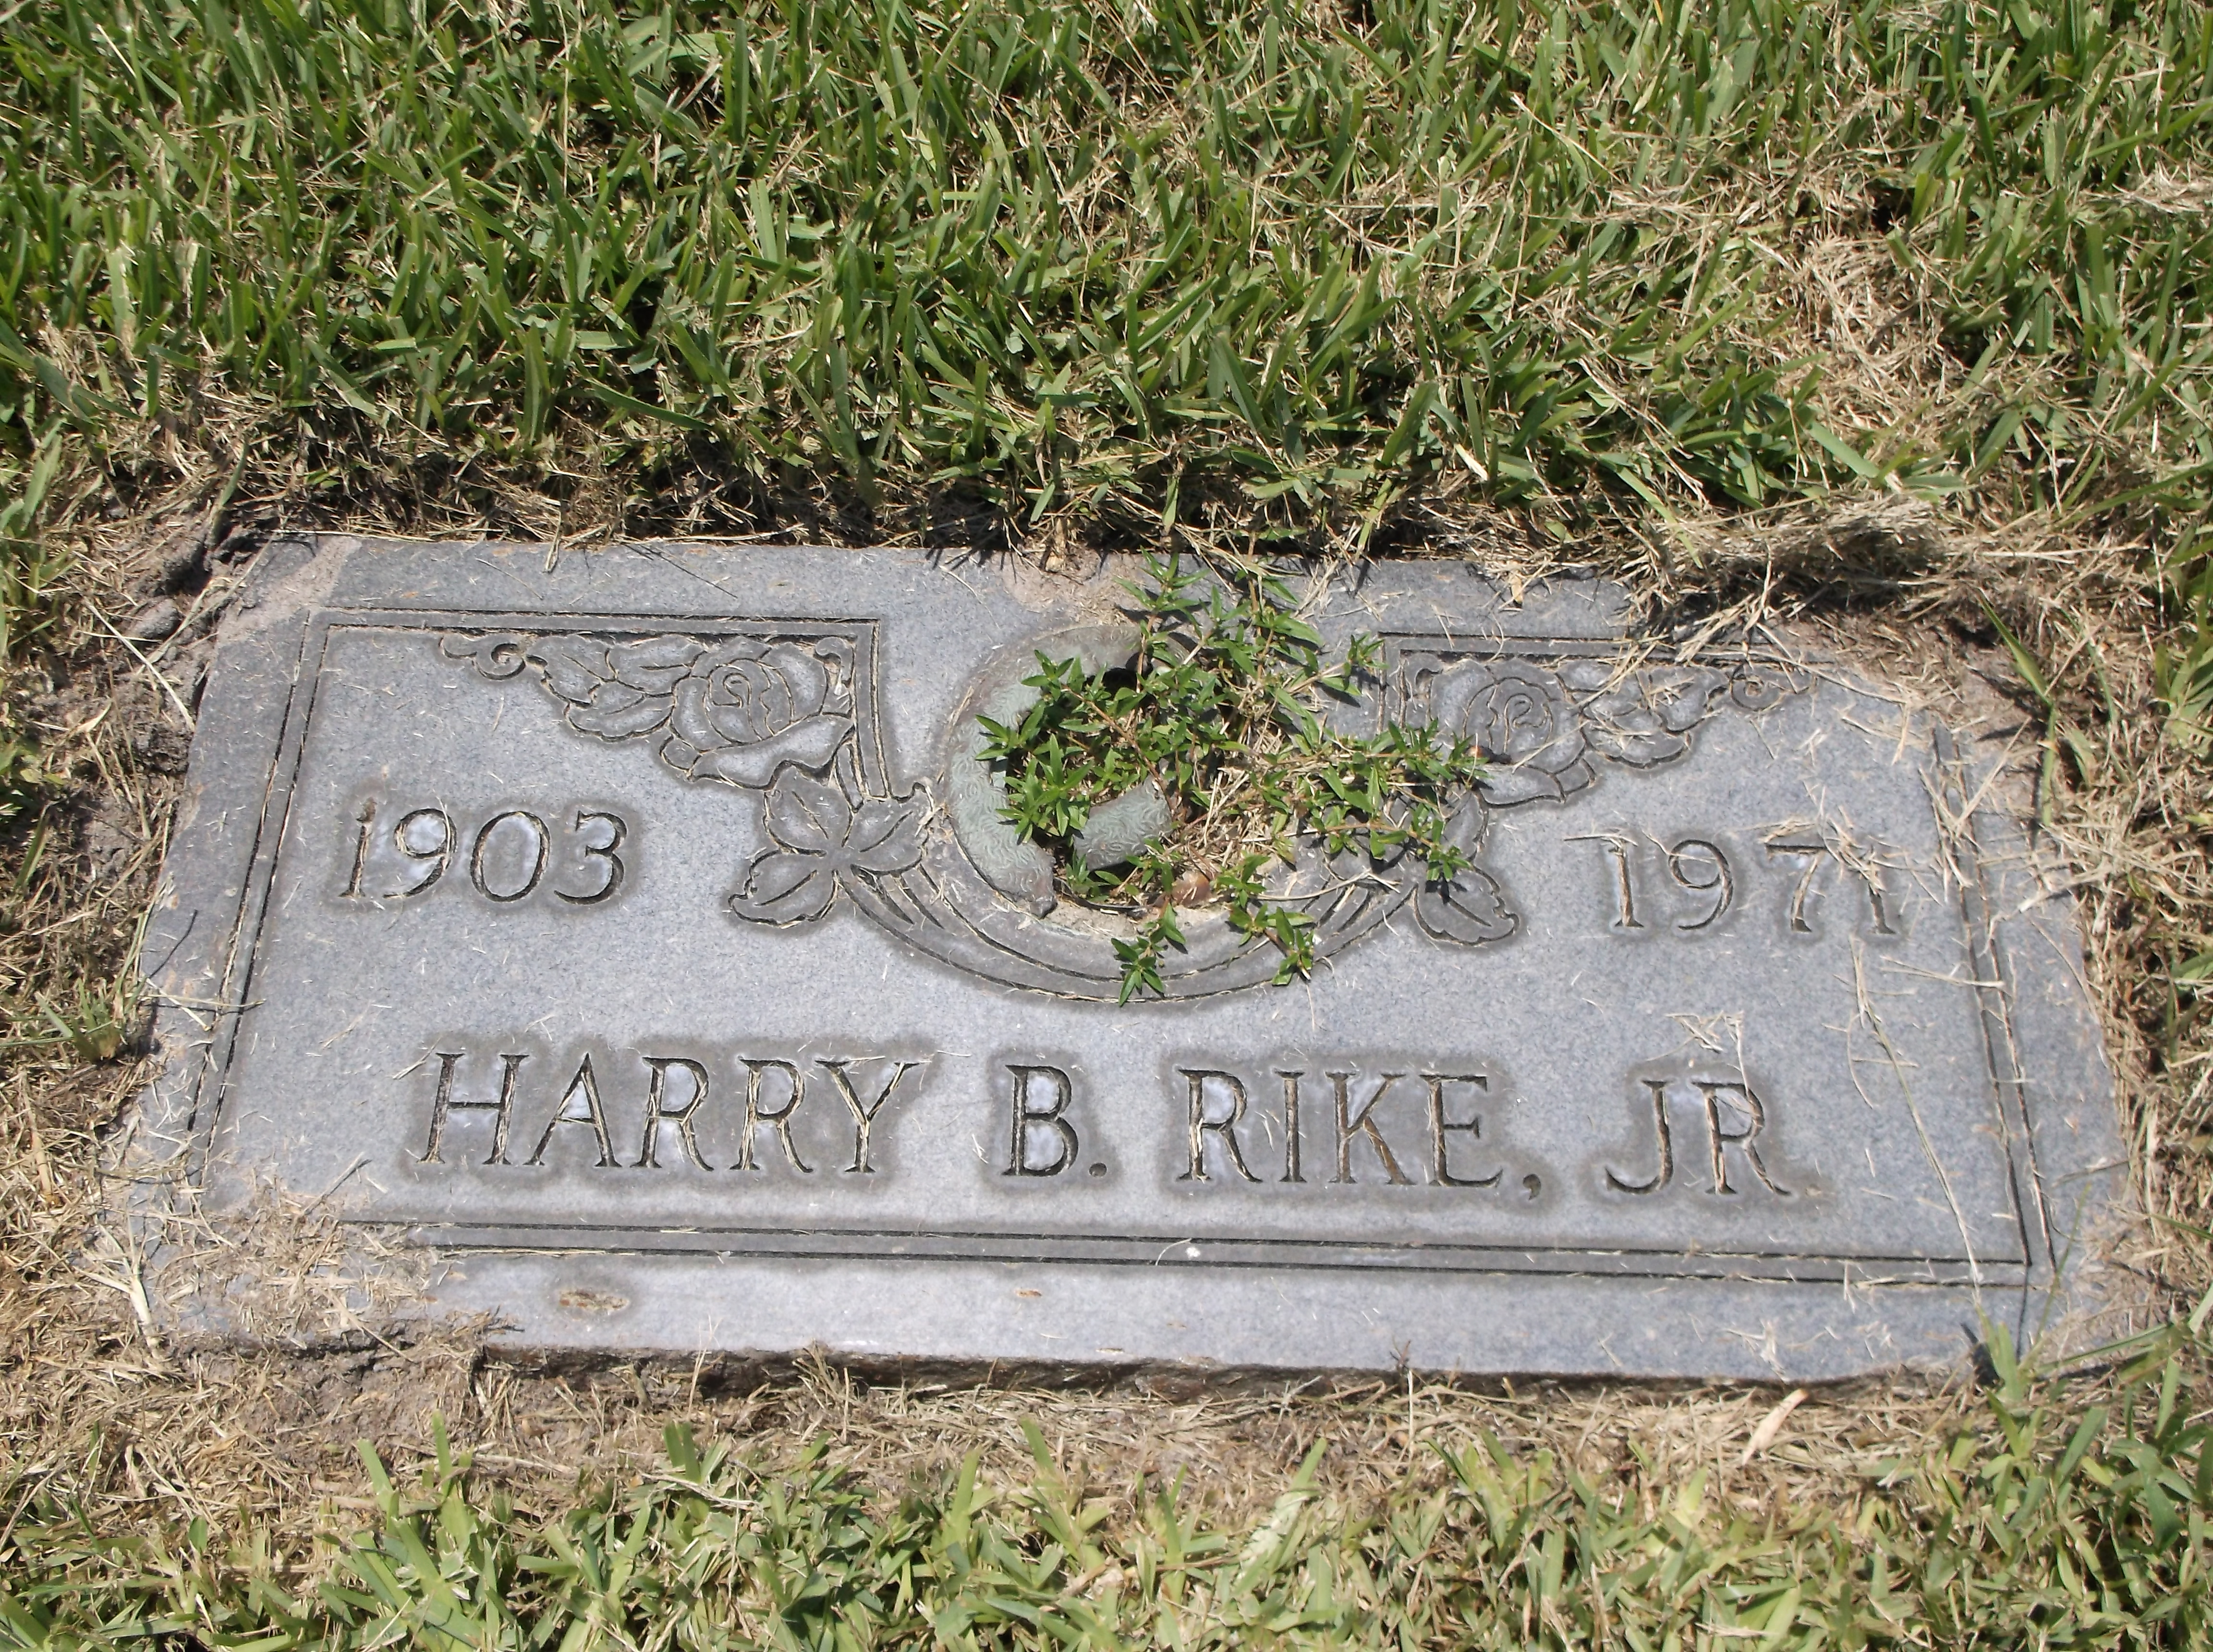 Harry B Rike, Jr